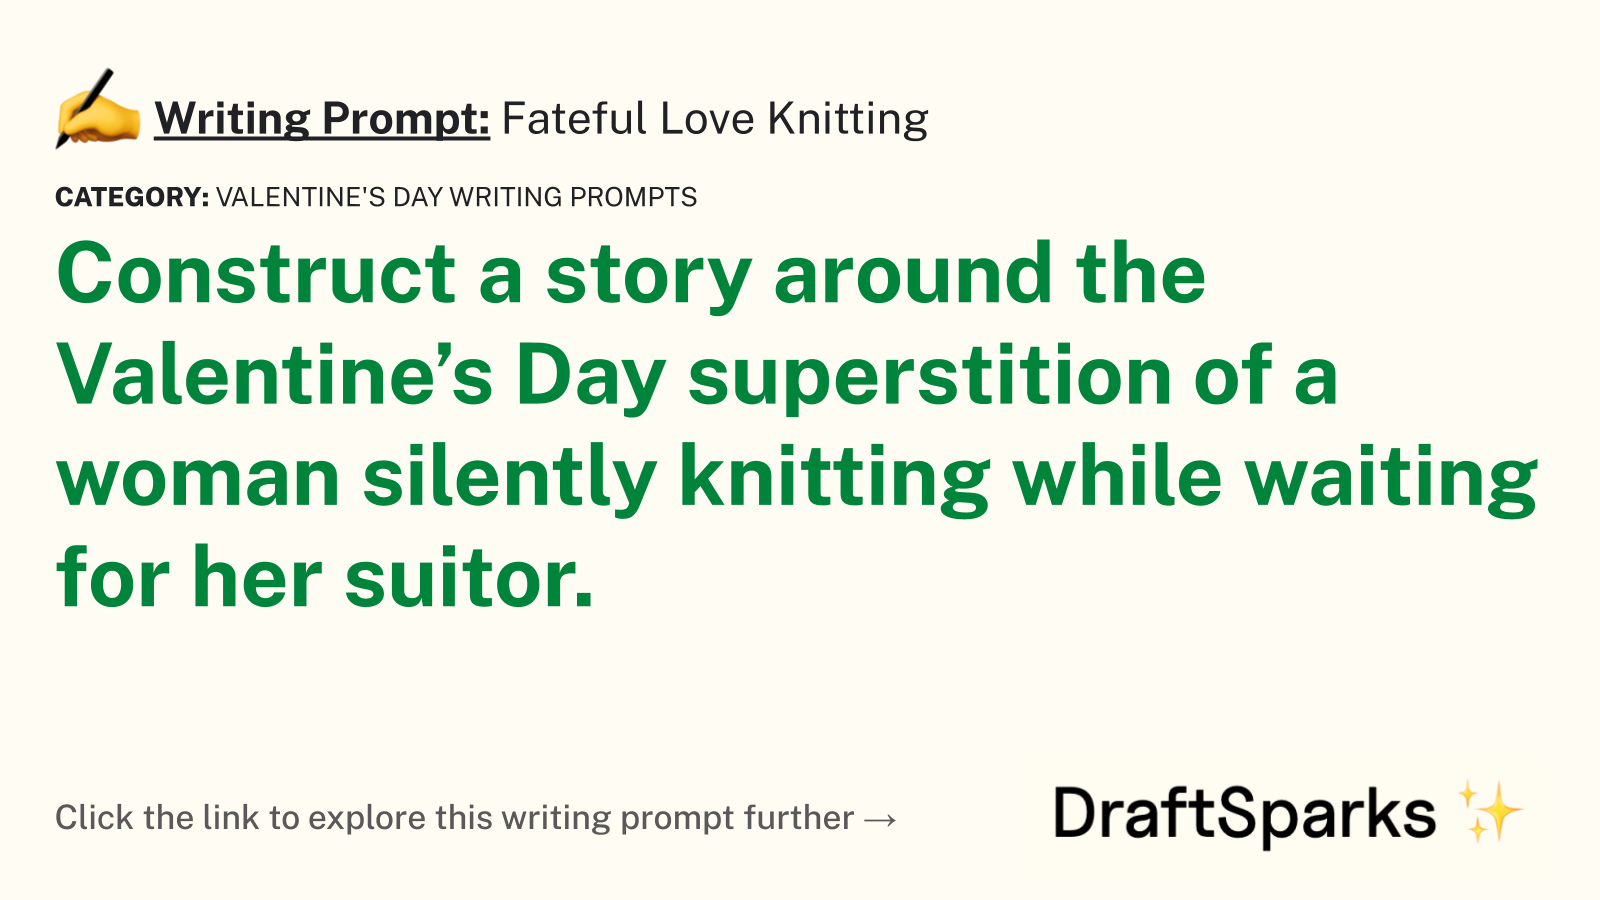 Fateful Love Knitting